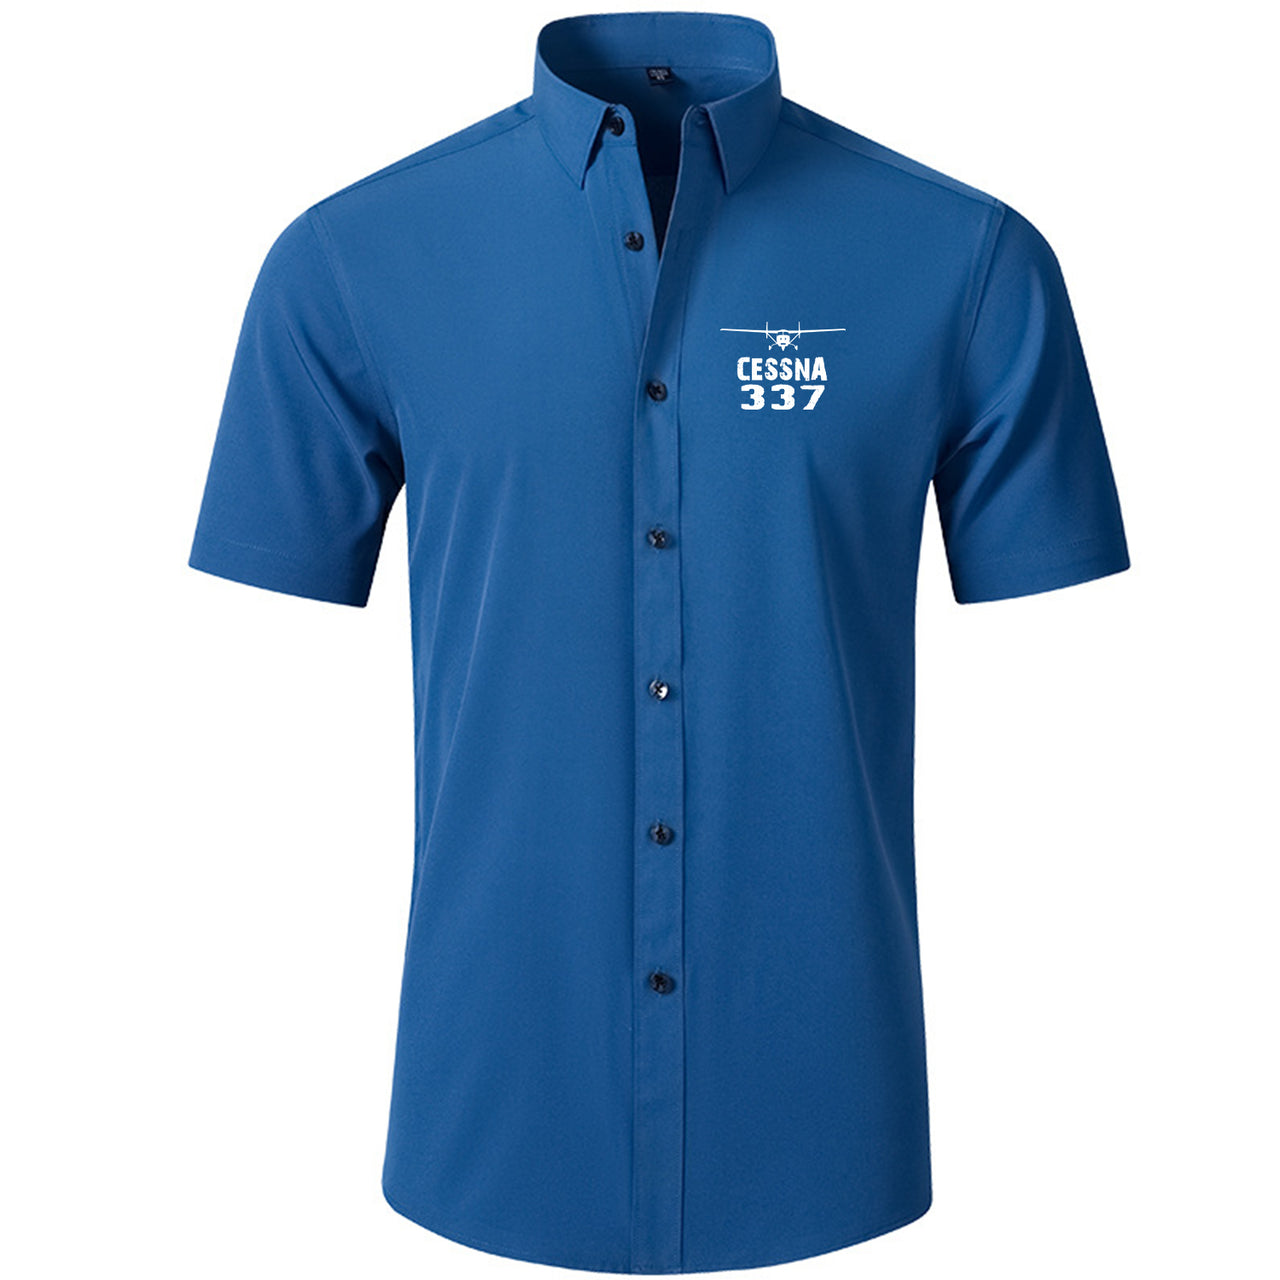 Cessna 337 & Plane Designed Short Sleeve Shirts